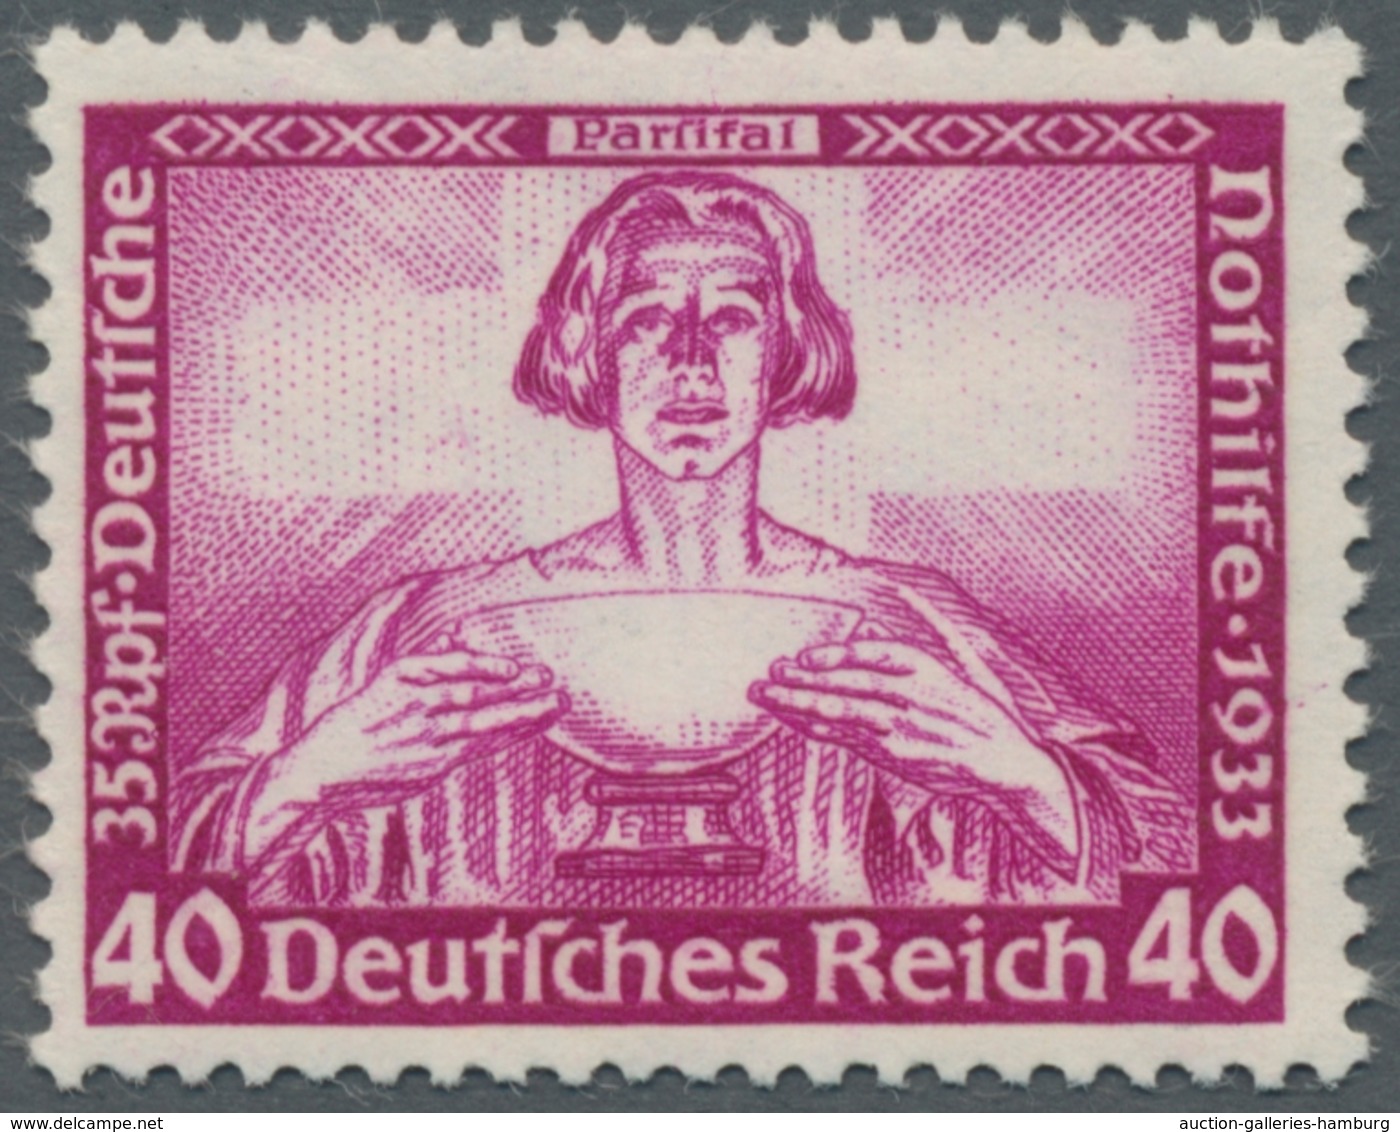 Nachlässe: 1933-ca.2001 Umfangreiche, schöne Deutschlandsammlung, angefangen mit einer kplt.Slg. Deu